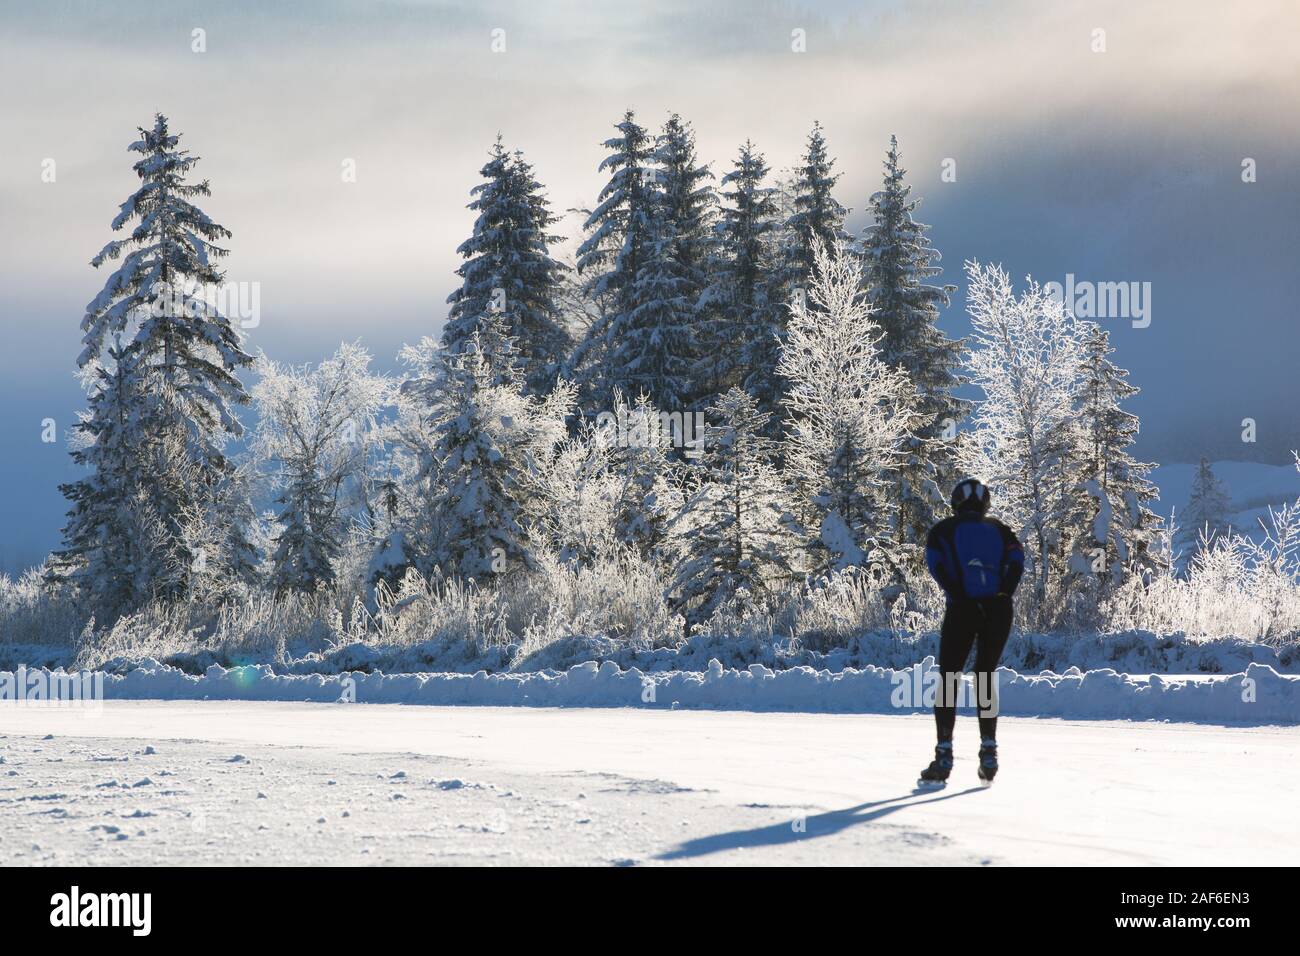 Kalten sonnigen Morgen. Eine Gruppe von gefrorenen Bäumen und einem Ice skater Skate über einen gefrorenen See bei Sonnenaufgang, Weissensee, Kärnten, Alpen, Österreich Stockfoto